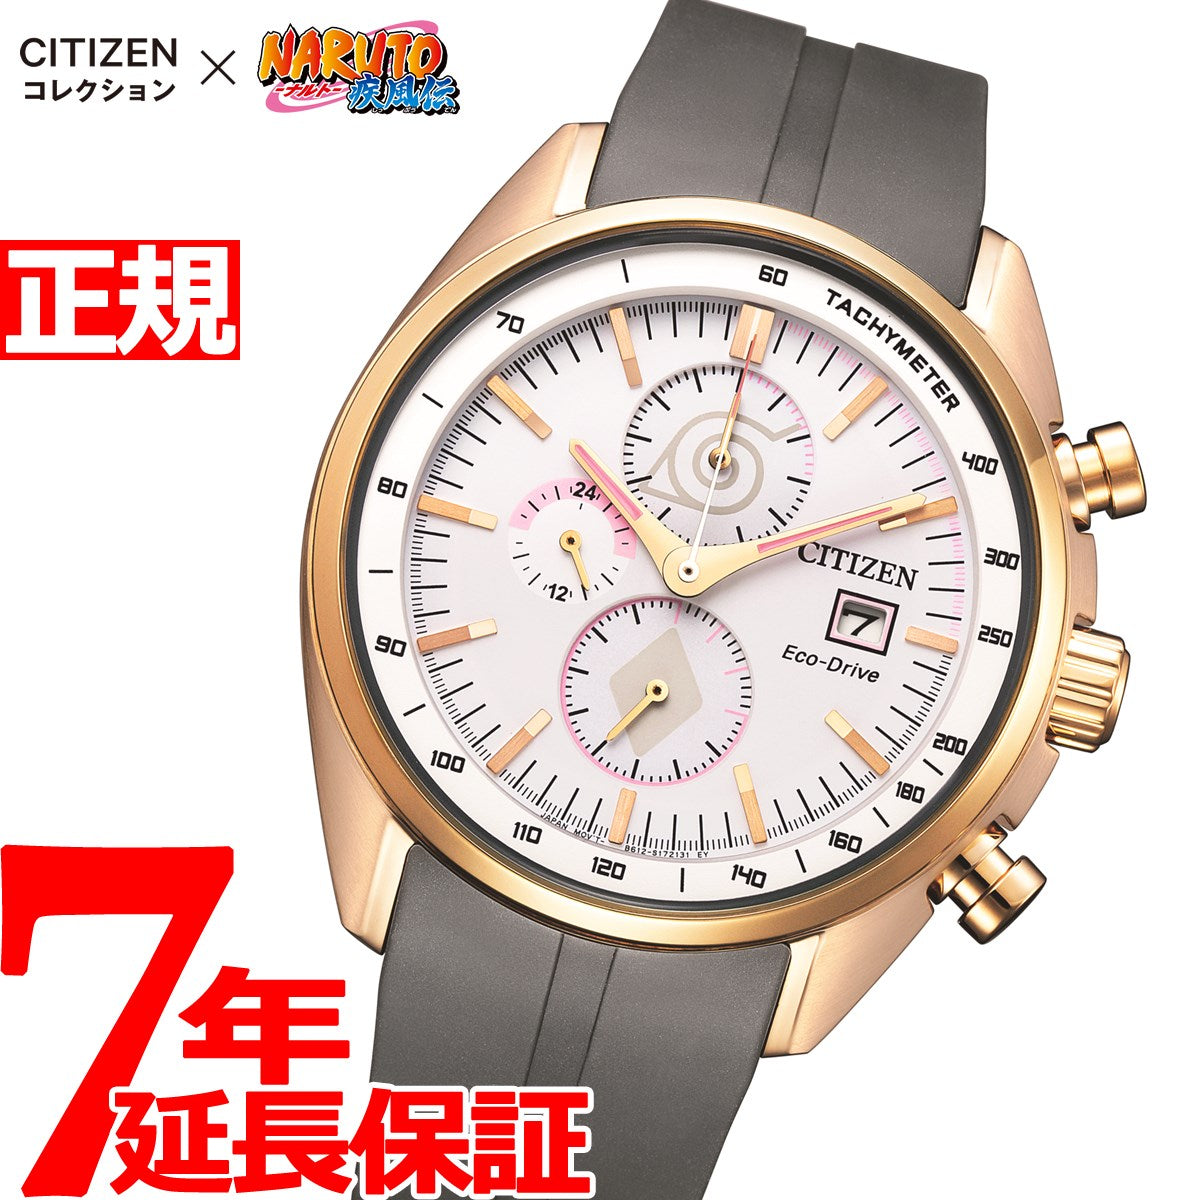 シチズン×NARUTO ナルト疾風伝 コラボ 限定モデル 腕時計 シチズン